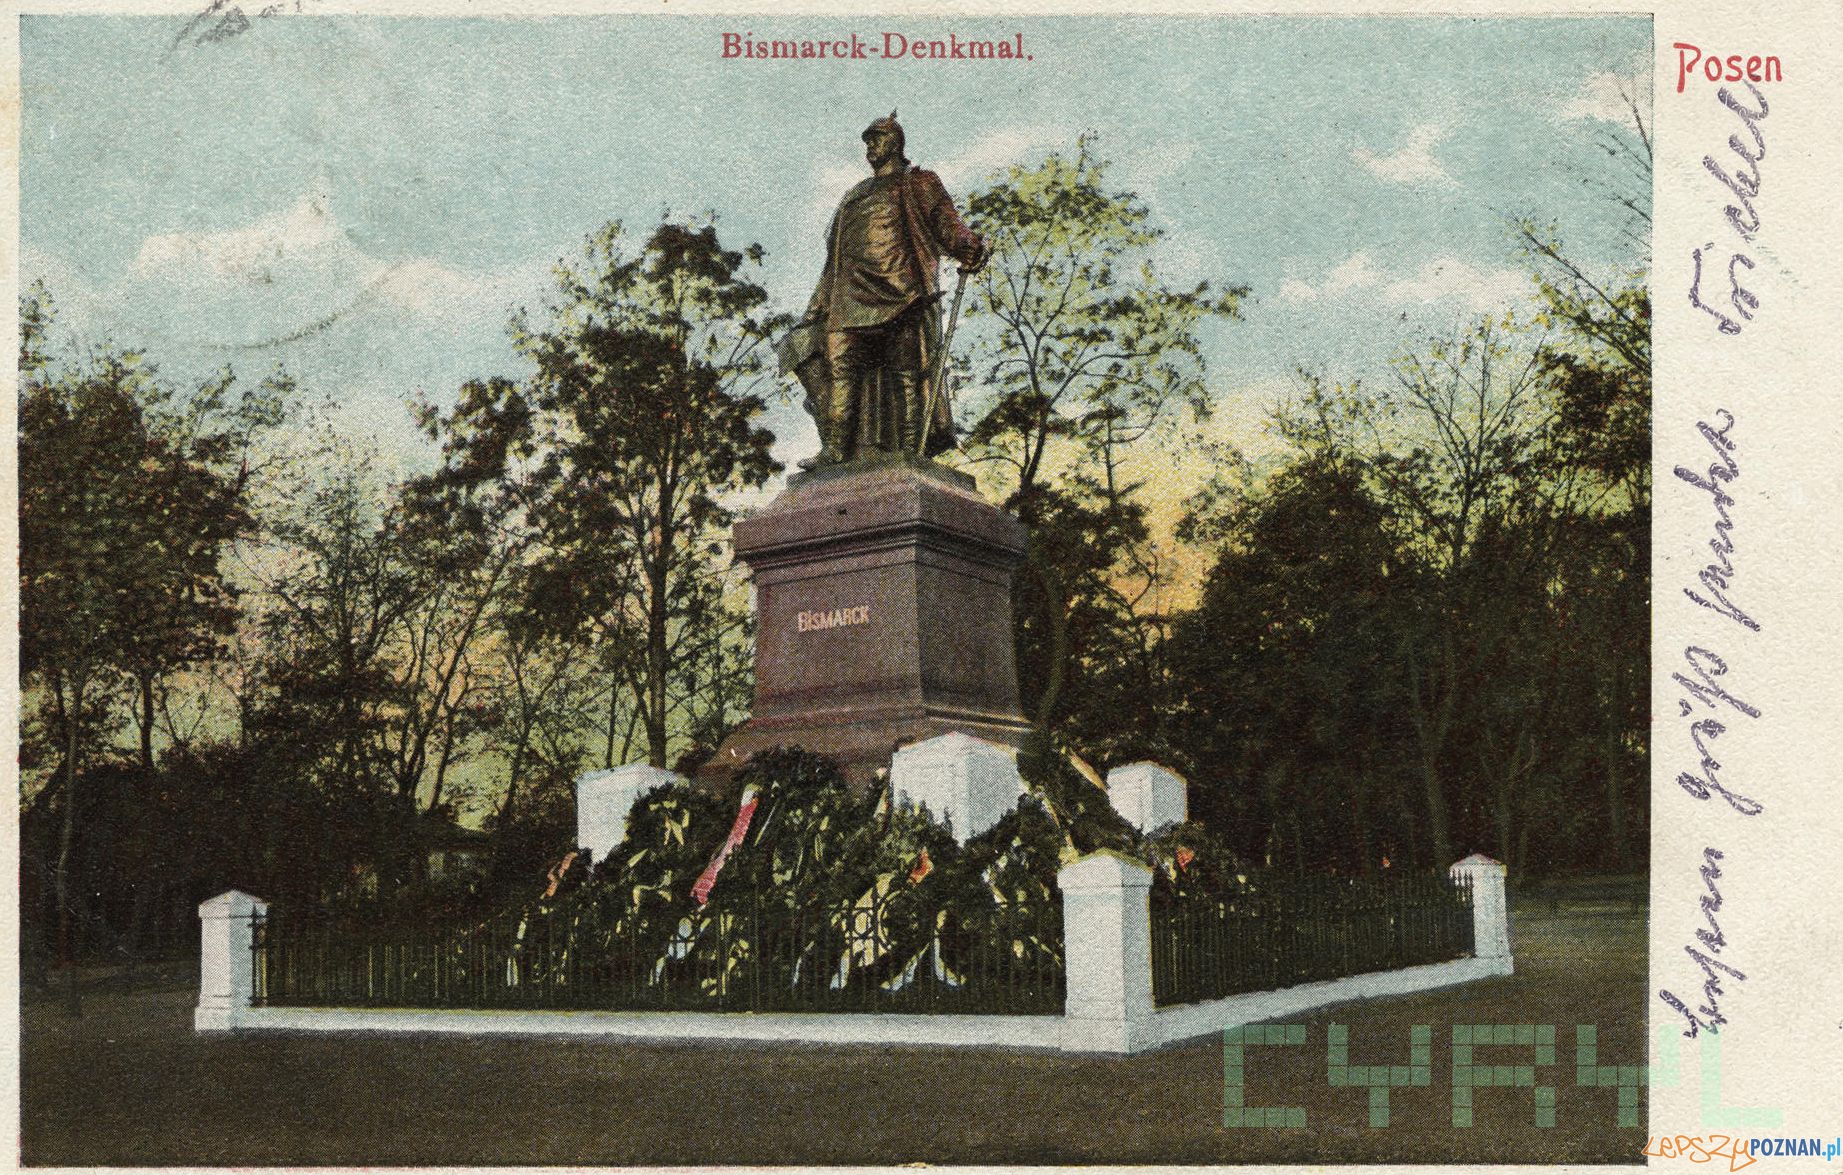 Pomnik Bismarcka na dzisiejszym Placu Mickiewicza 1903-1905 